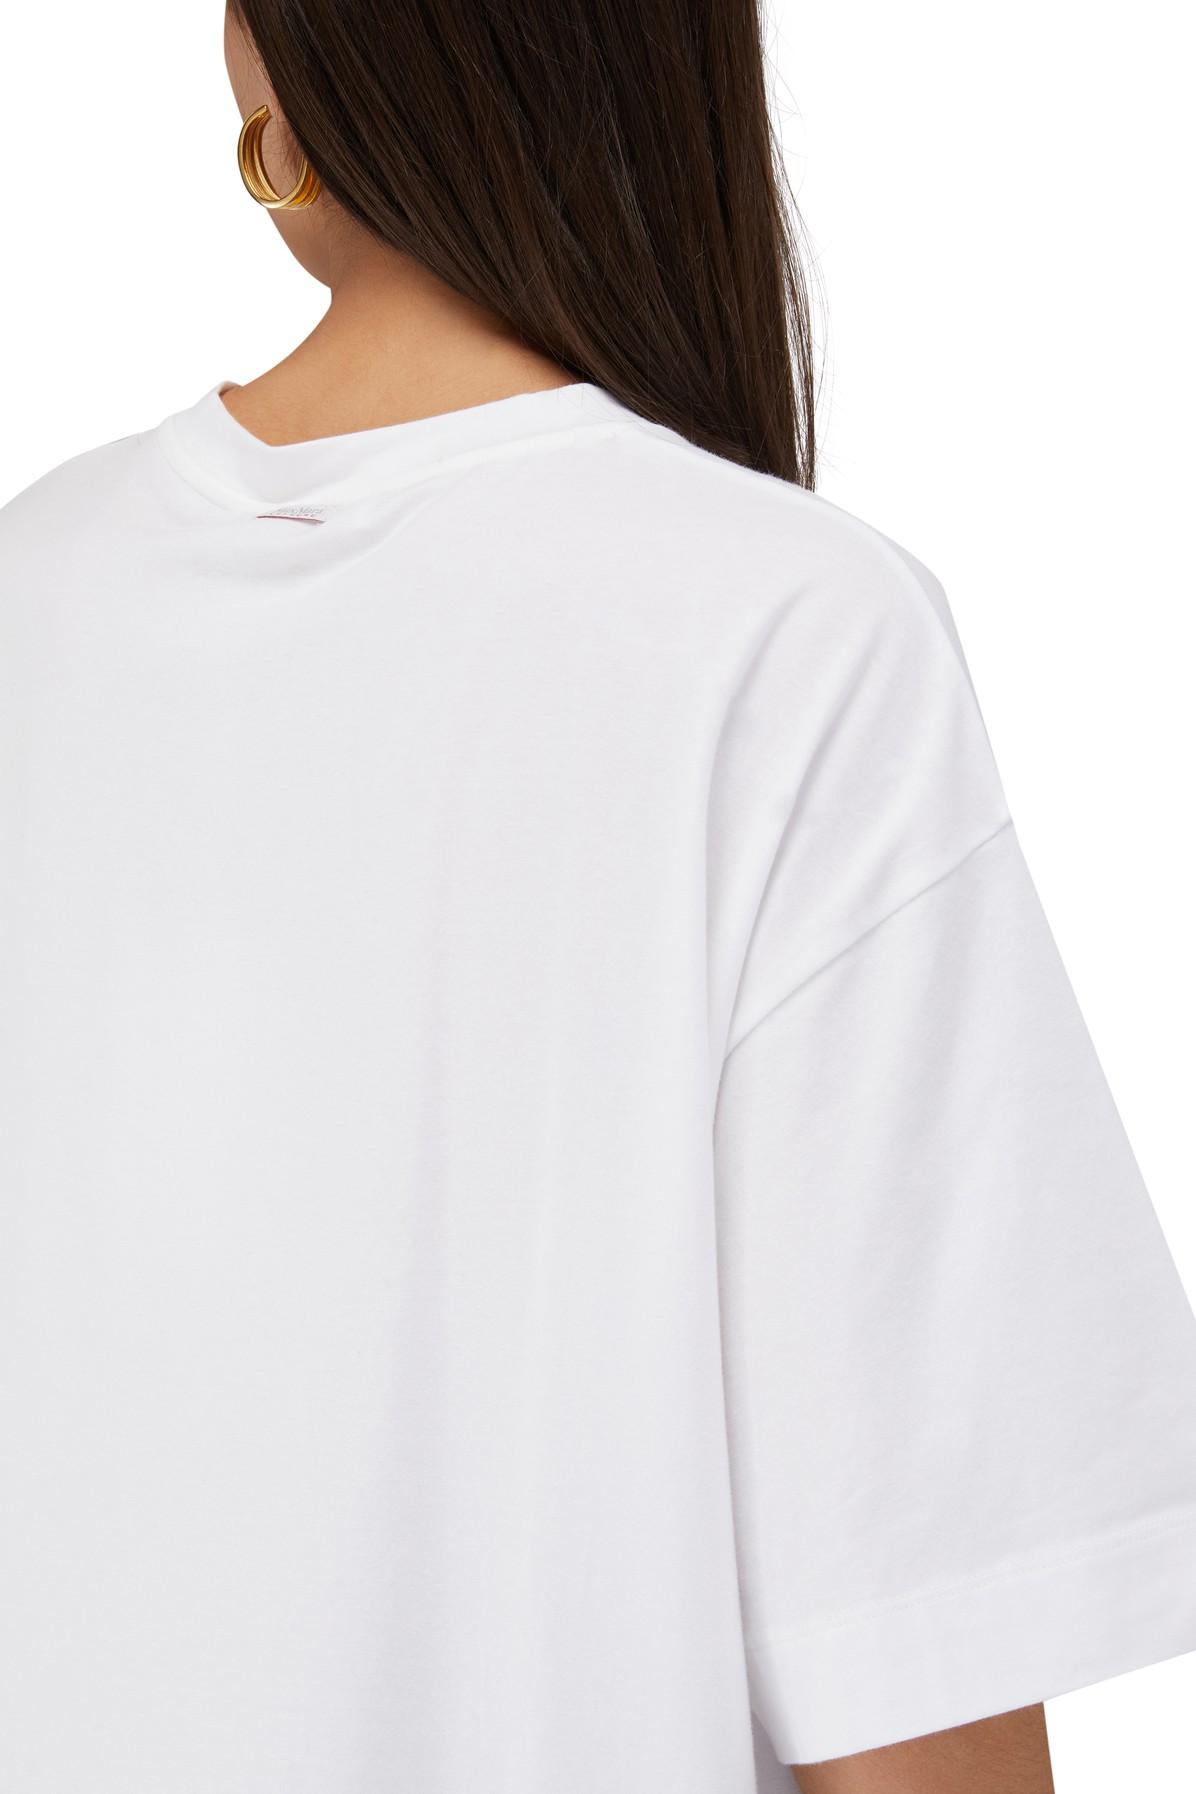 Max Mara Cotton Kirin Logo T-shirt - Leisure in White - Lyst